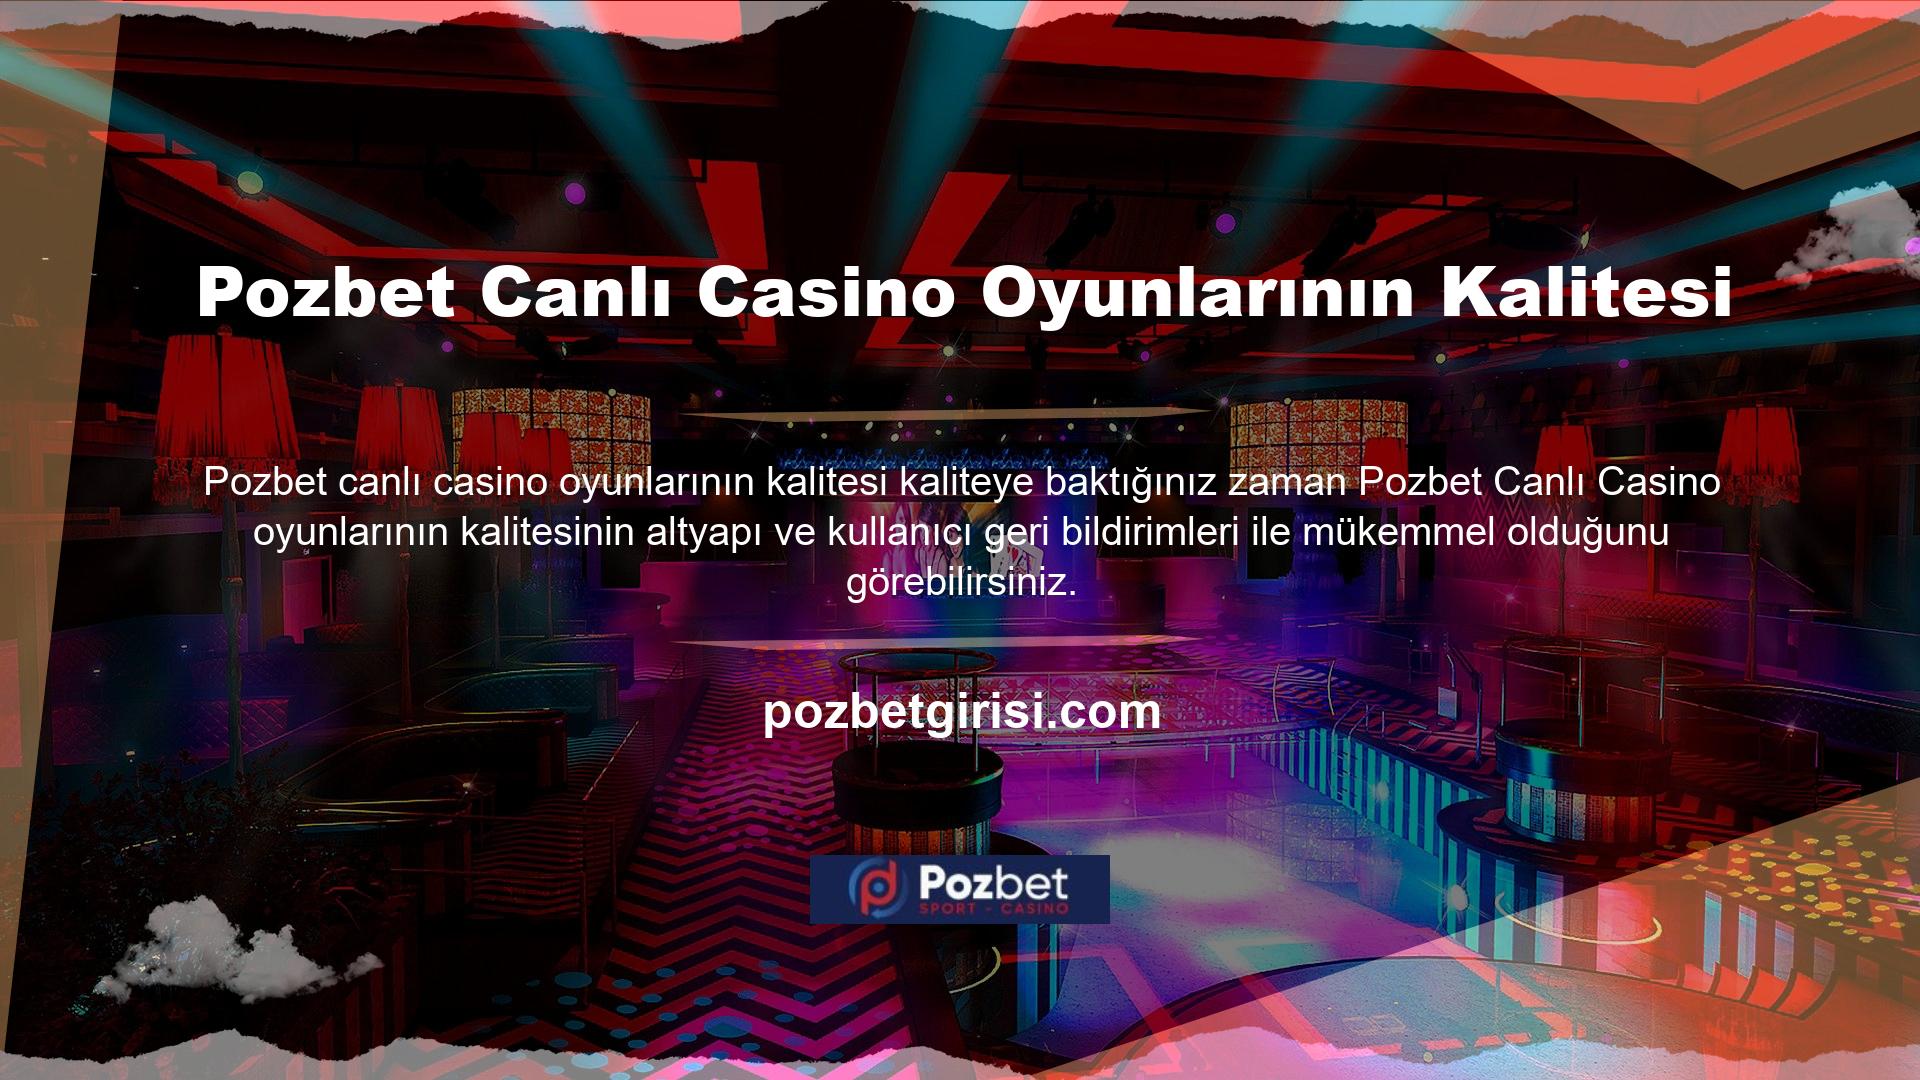 Ayrıca Pozbet Casino'daki canlı oyunların kalitesinin, kullanıcıların bu hizmetlerin kalitesine ilişkin görüşleri dikkate alındığında insanlara mükemmel bir hizmet sunduğu sonucuna varıyoruz